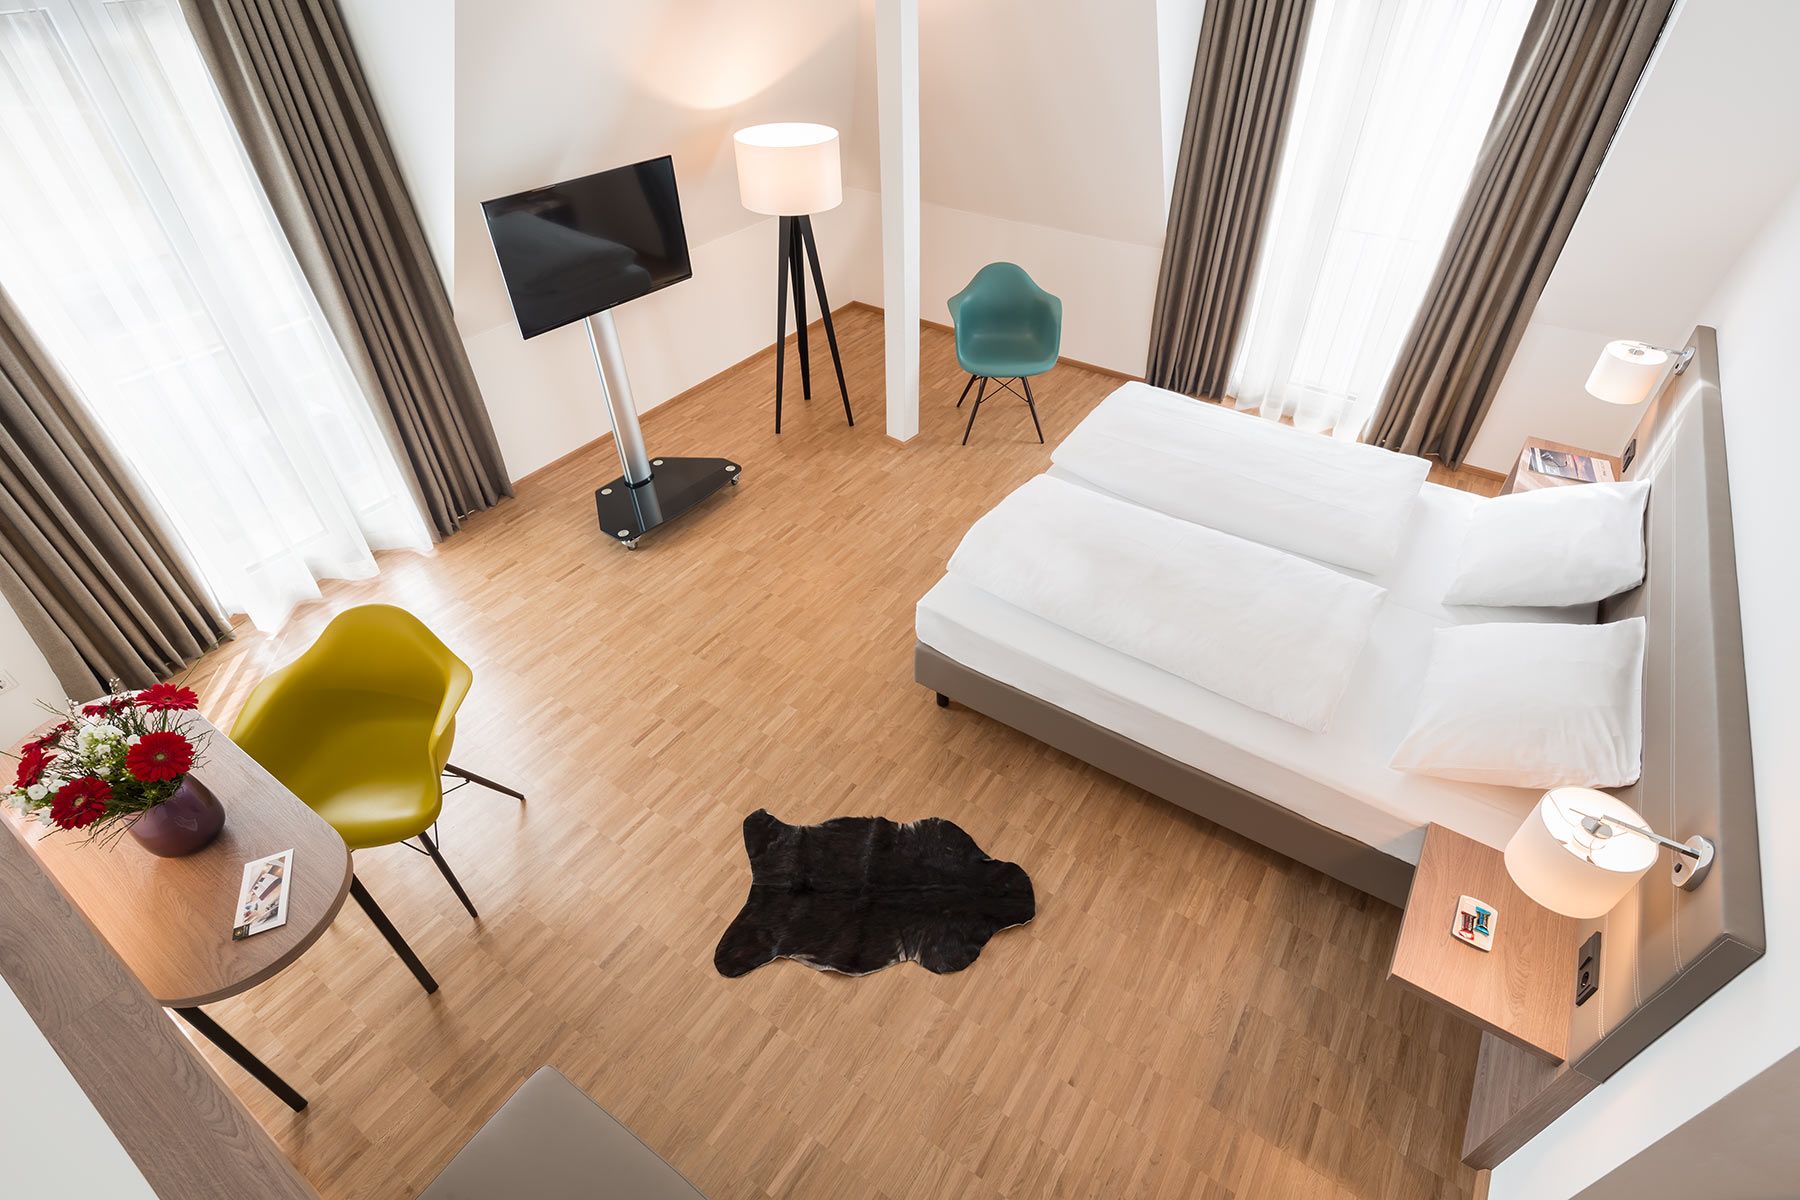 Helles und modernes Hotelzimmer im Hotel Trezor in Singen am Hohentwiel - Generalsanierung durch APPIA Contract GmbH